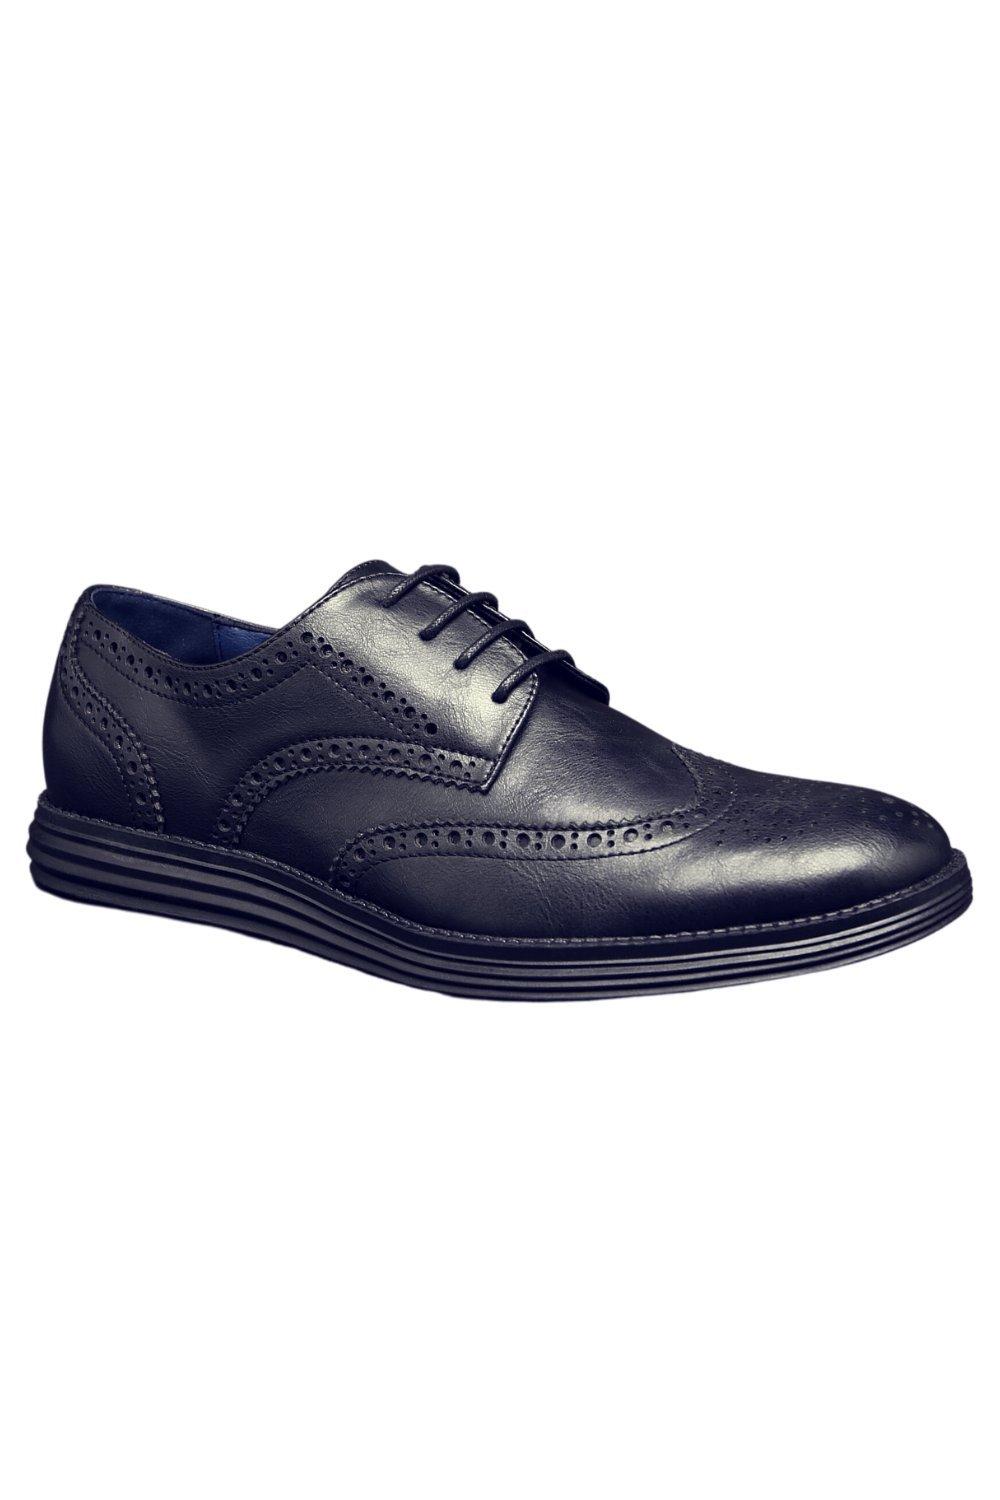 Кожаные деловые туфли на шнуровке в стиле смарт-офис TOP STAKA SHOES, черный мужские кожаные деловые туфли на шнуровке для офиса зеленый